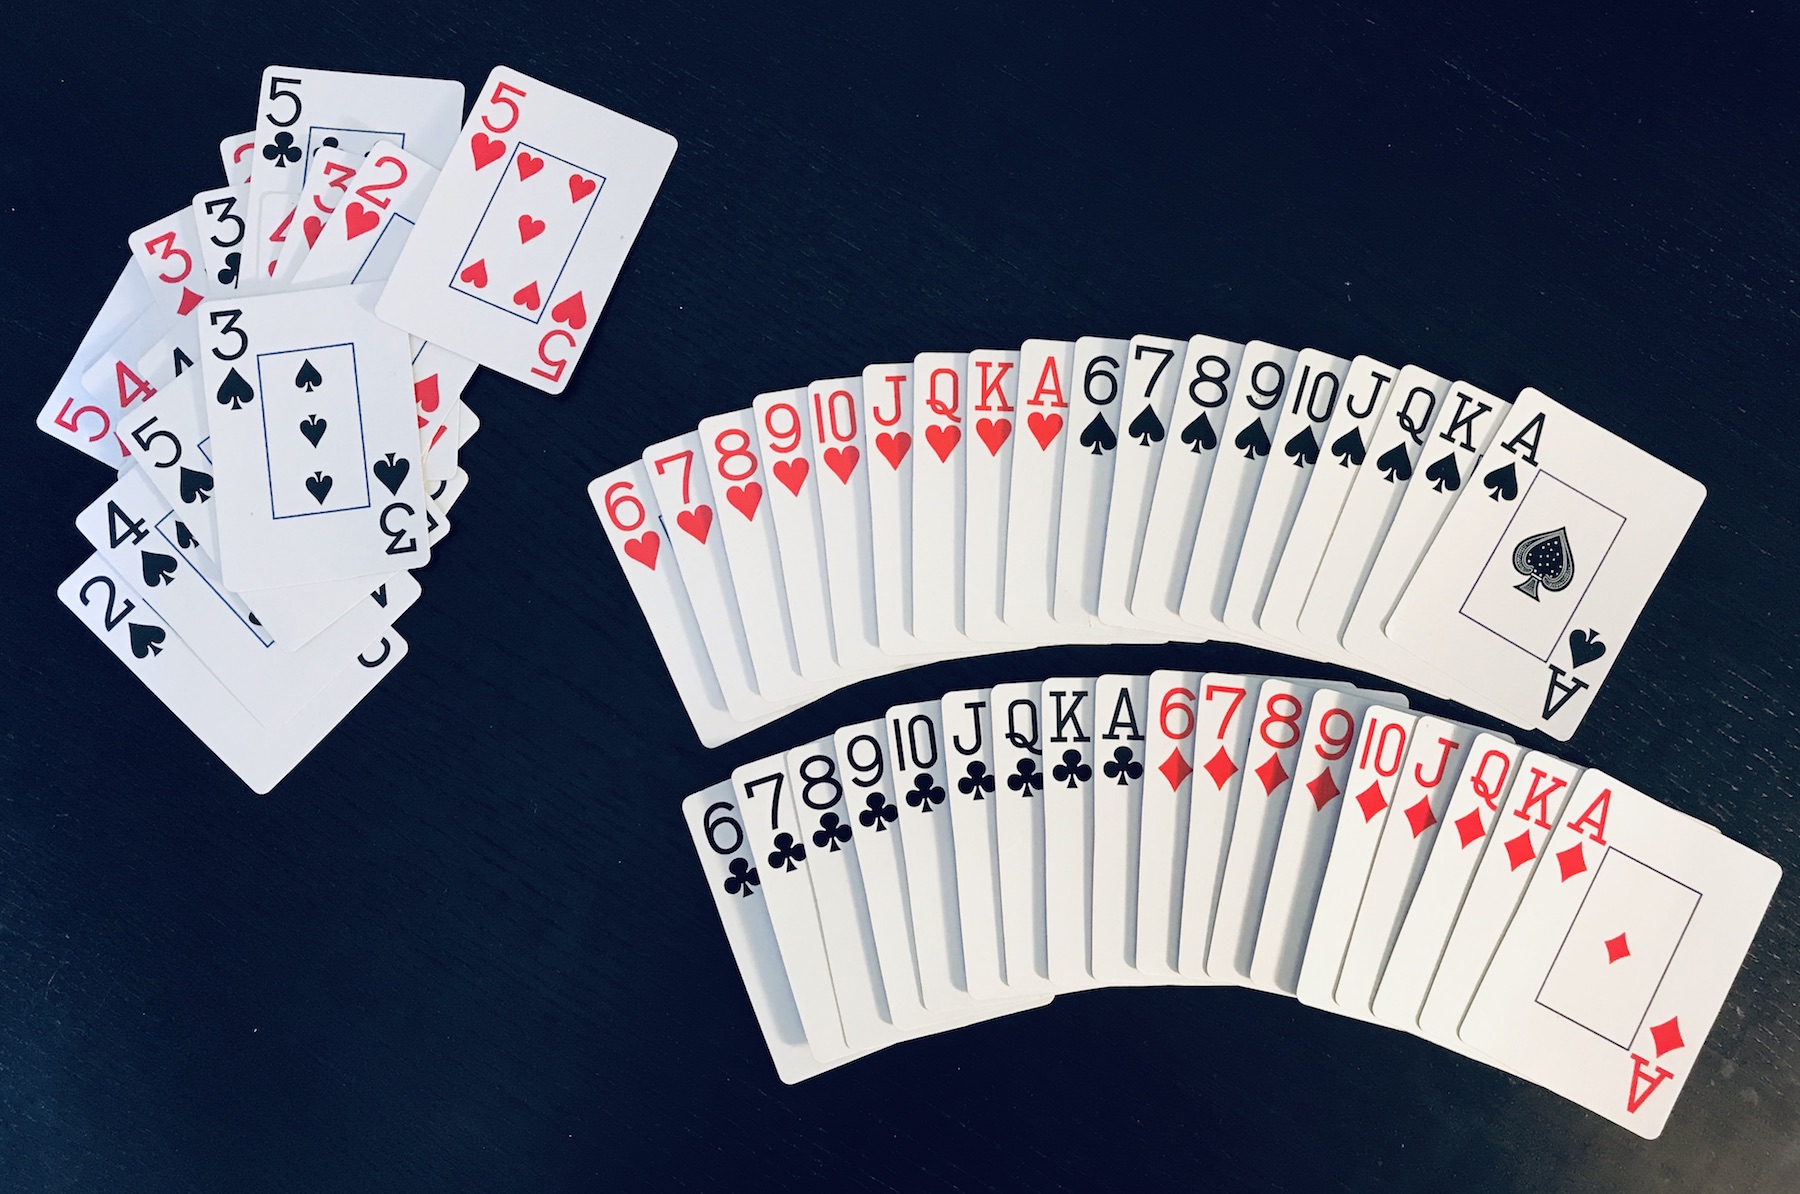 Short deck. Покер. Short Deck комбинации Покер. Комбинации в шорт дек Покер. Карты "1864 Poker Deck".